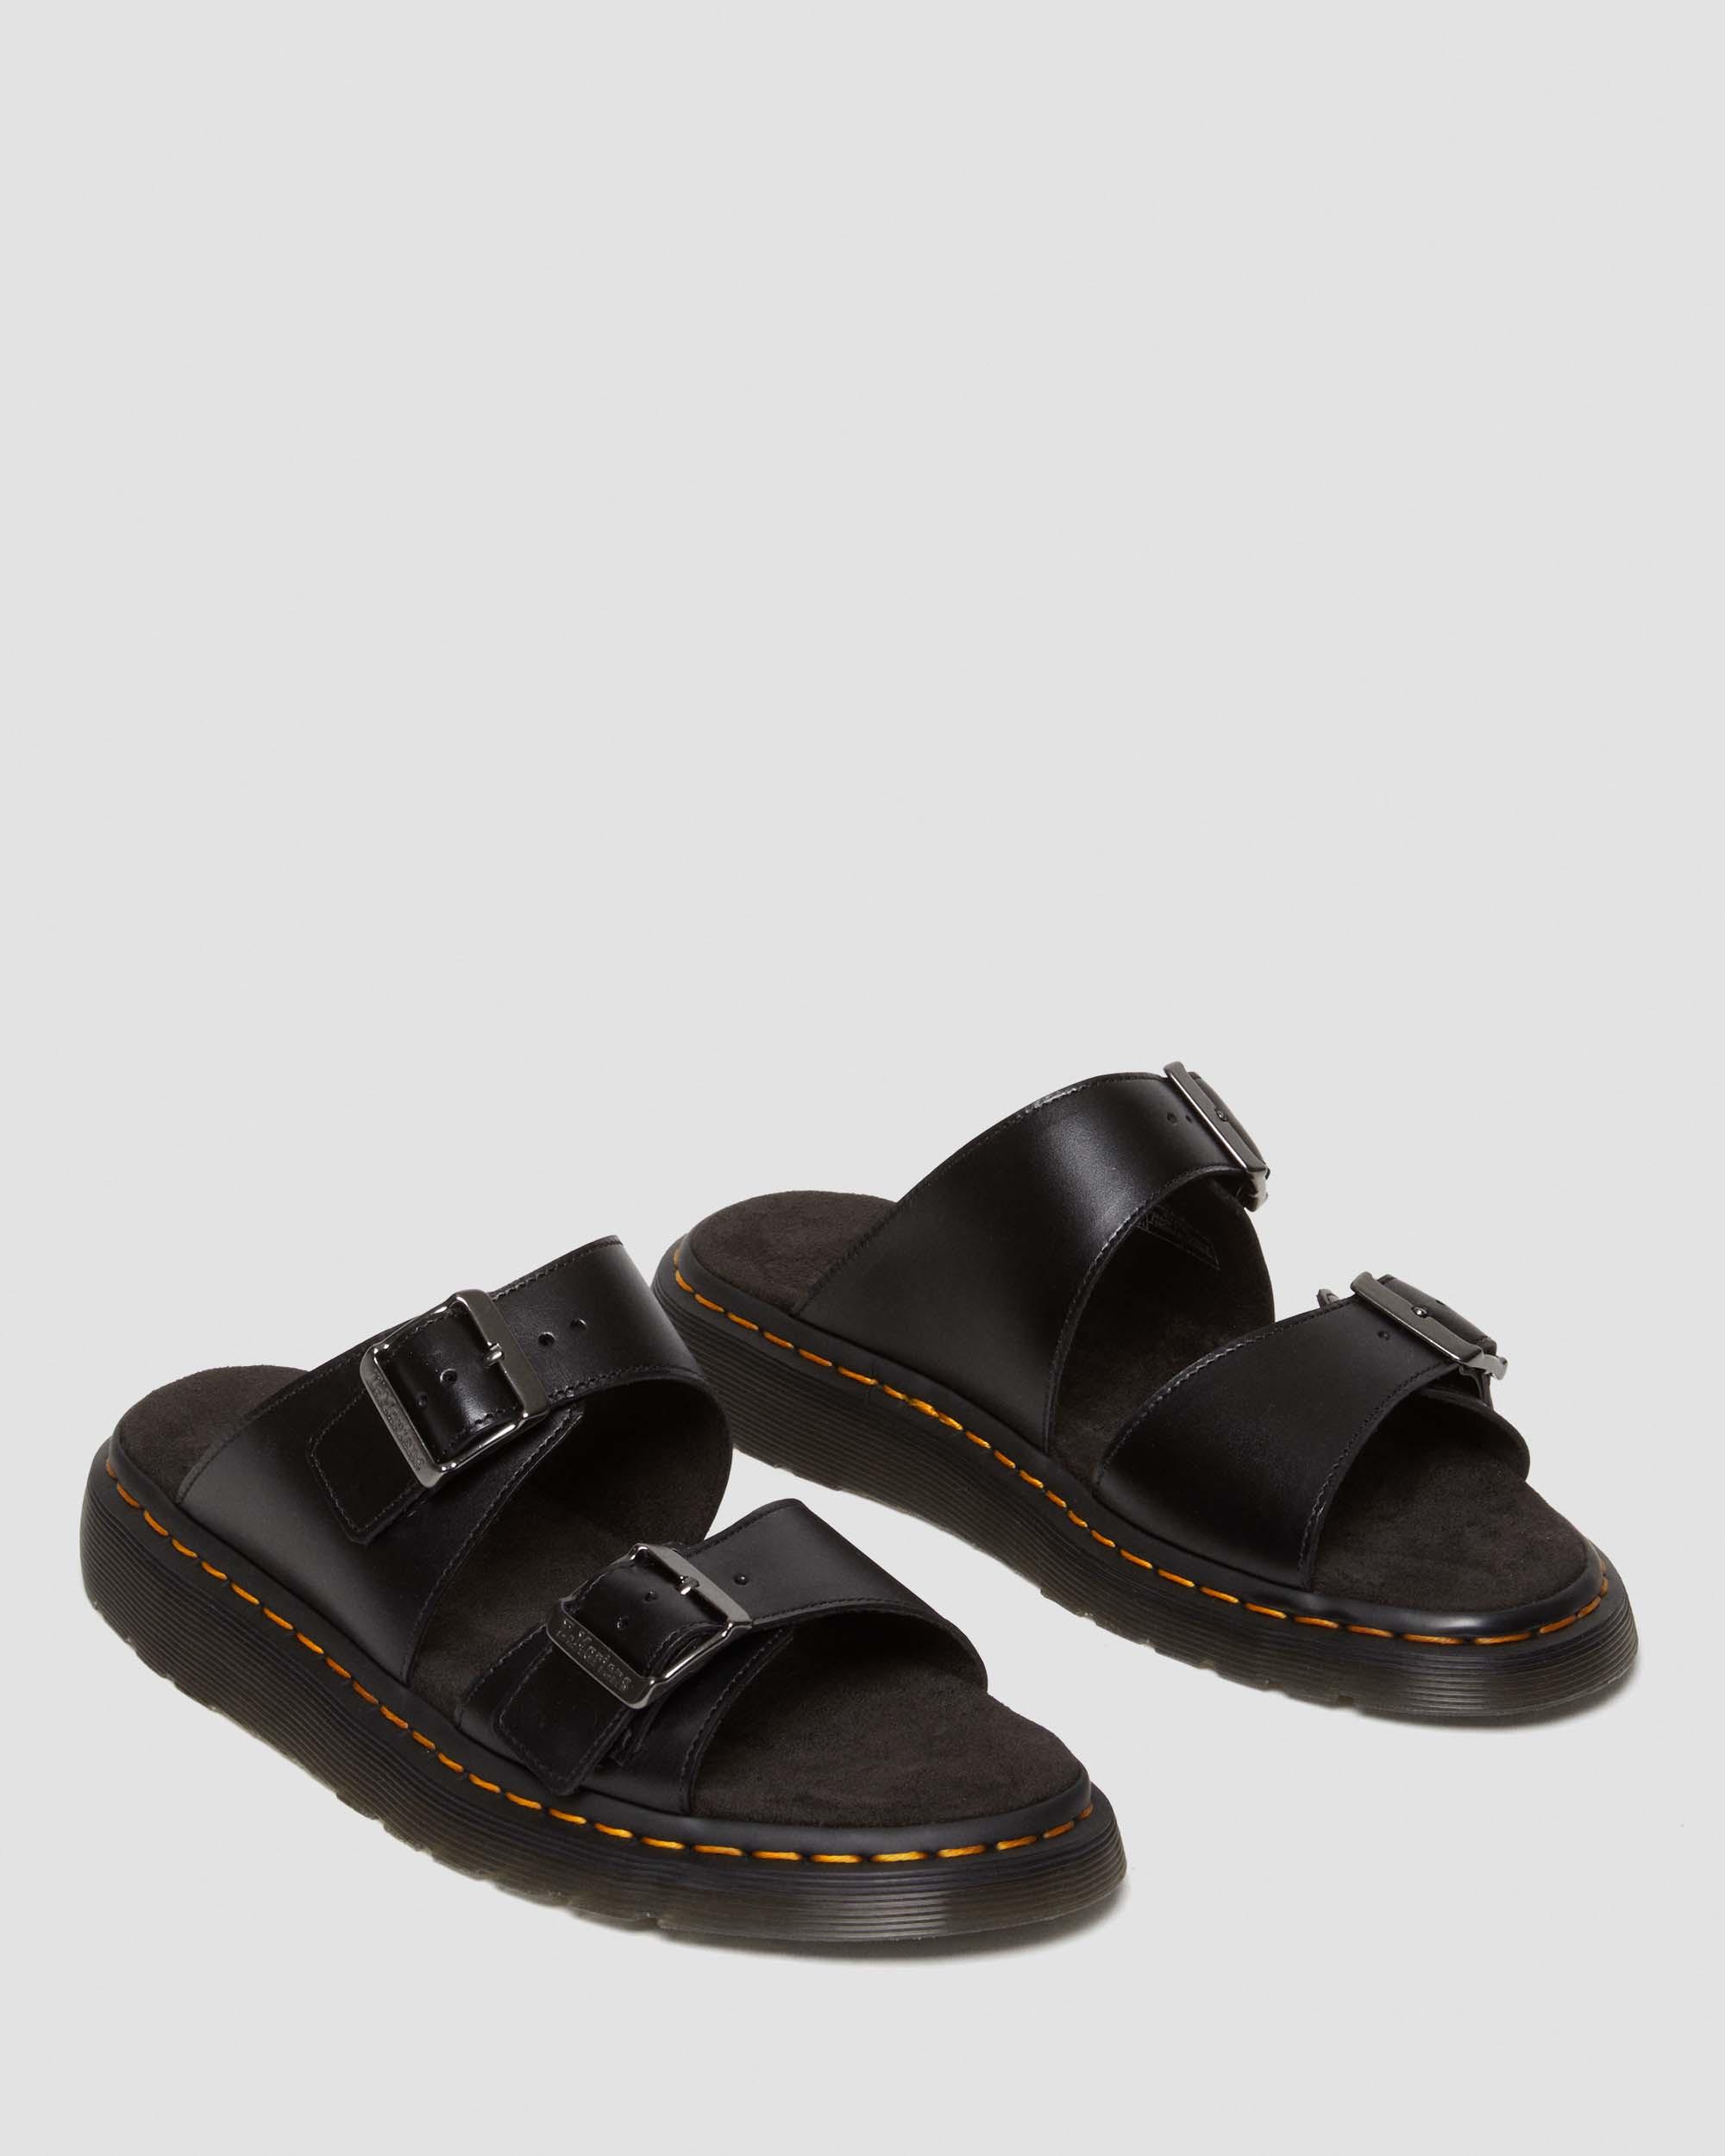 Josef Leather Buckle Slide Sandals in Black